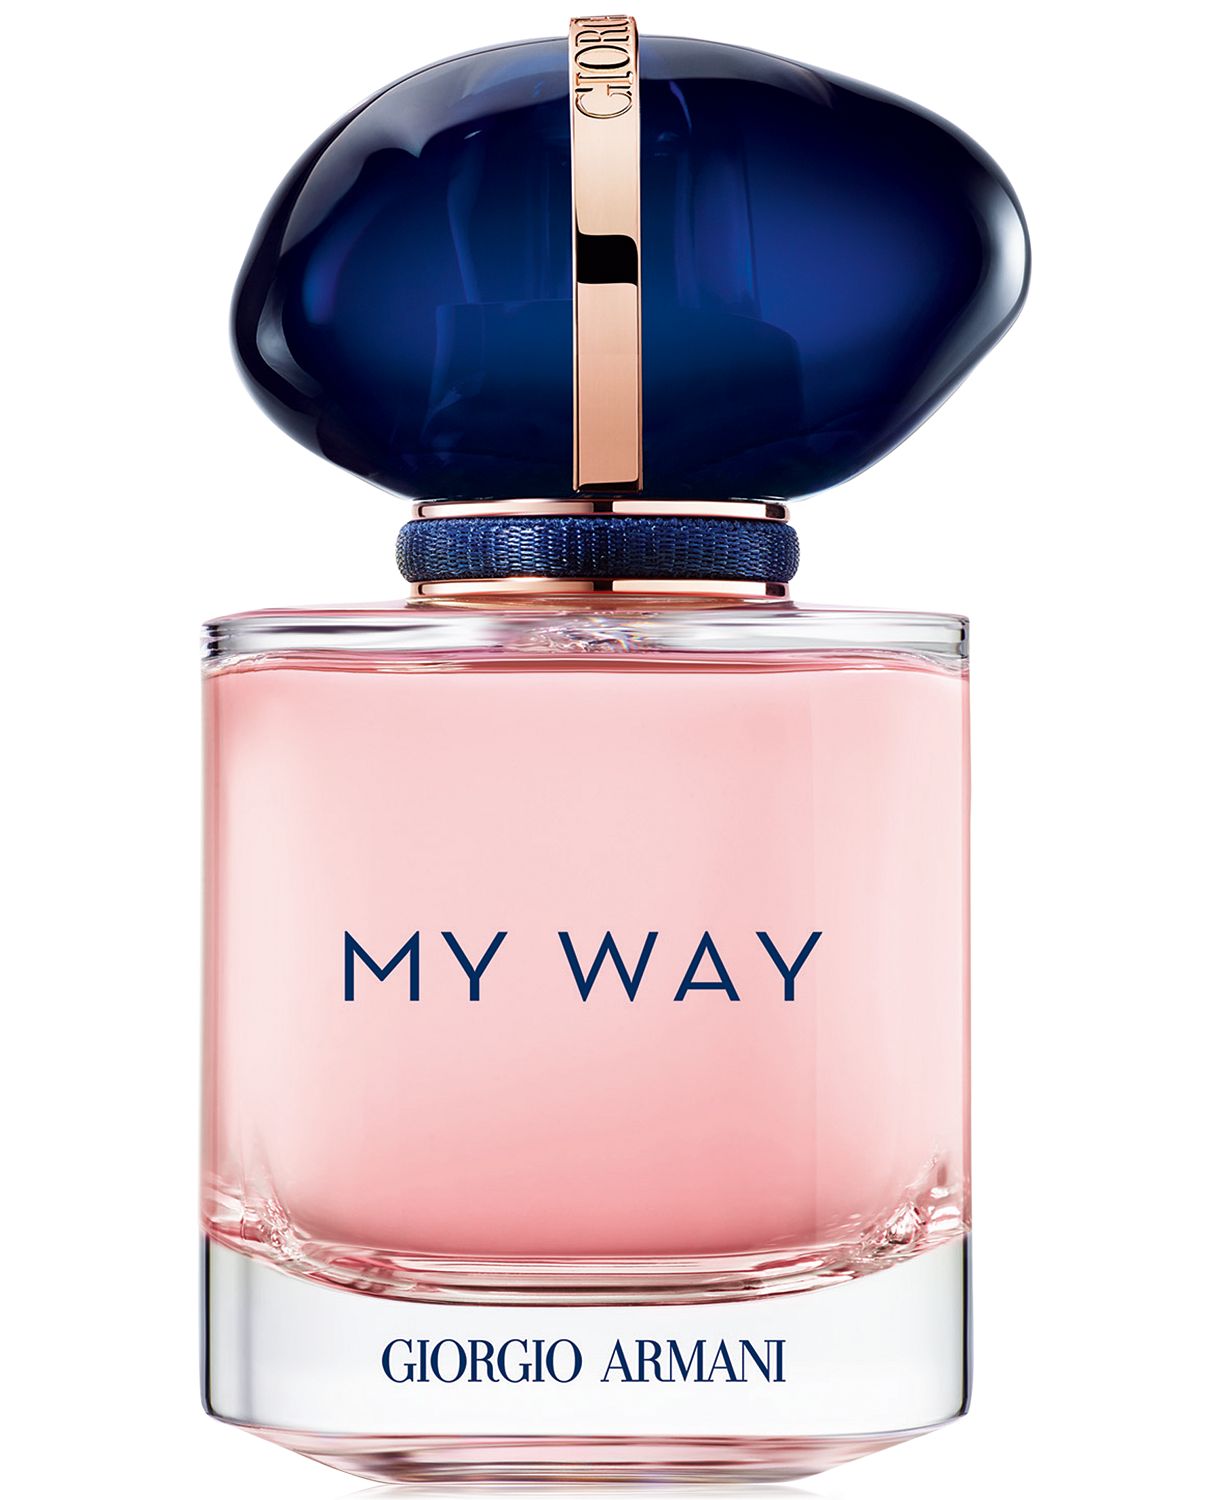 My Way Eau de Parfum Spray, 1-oz.